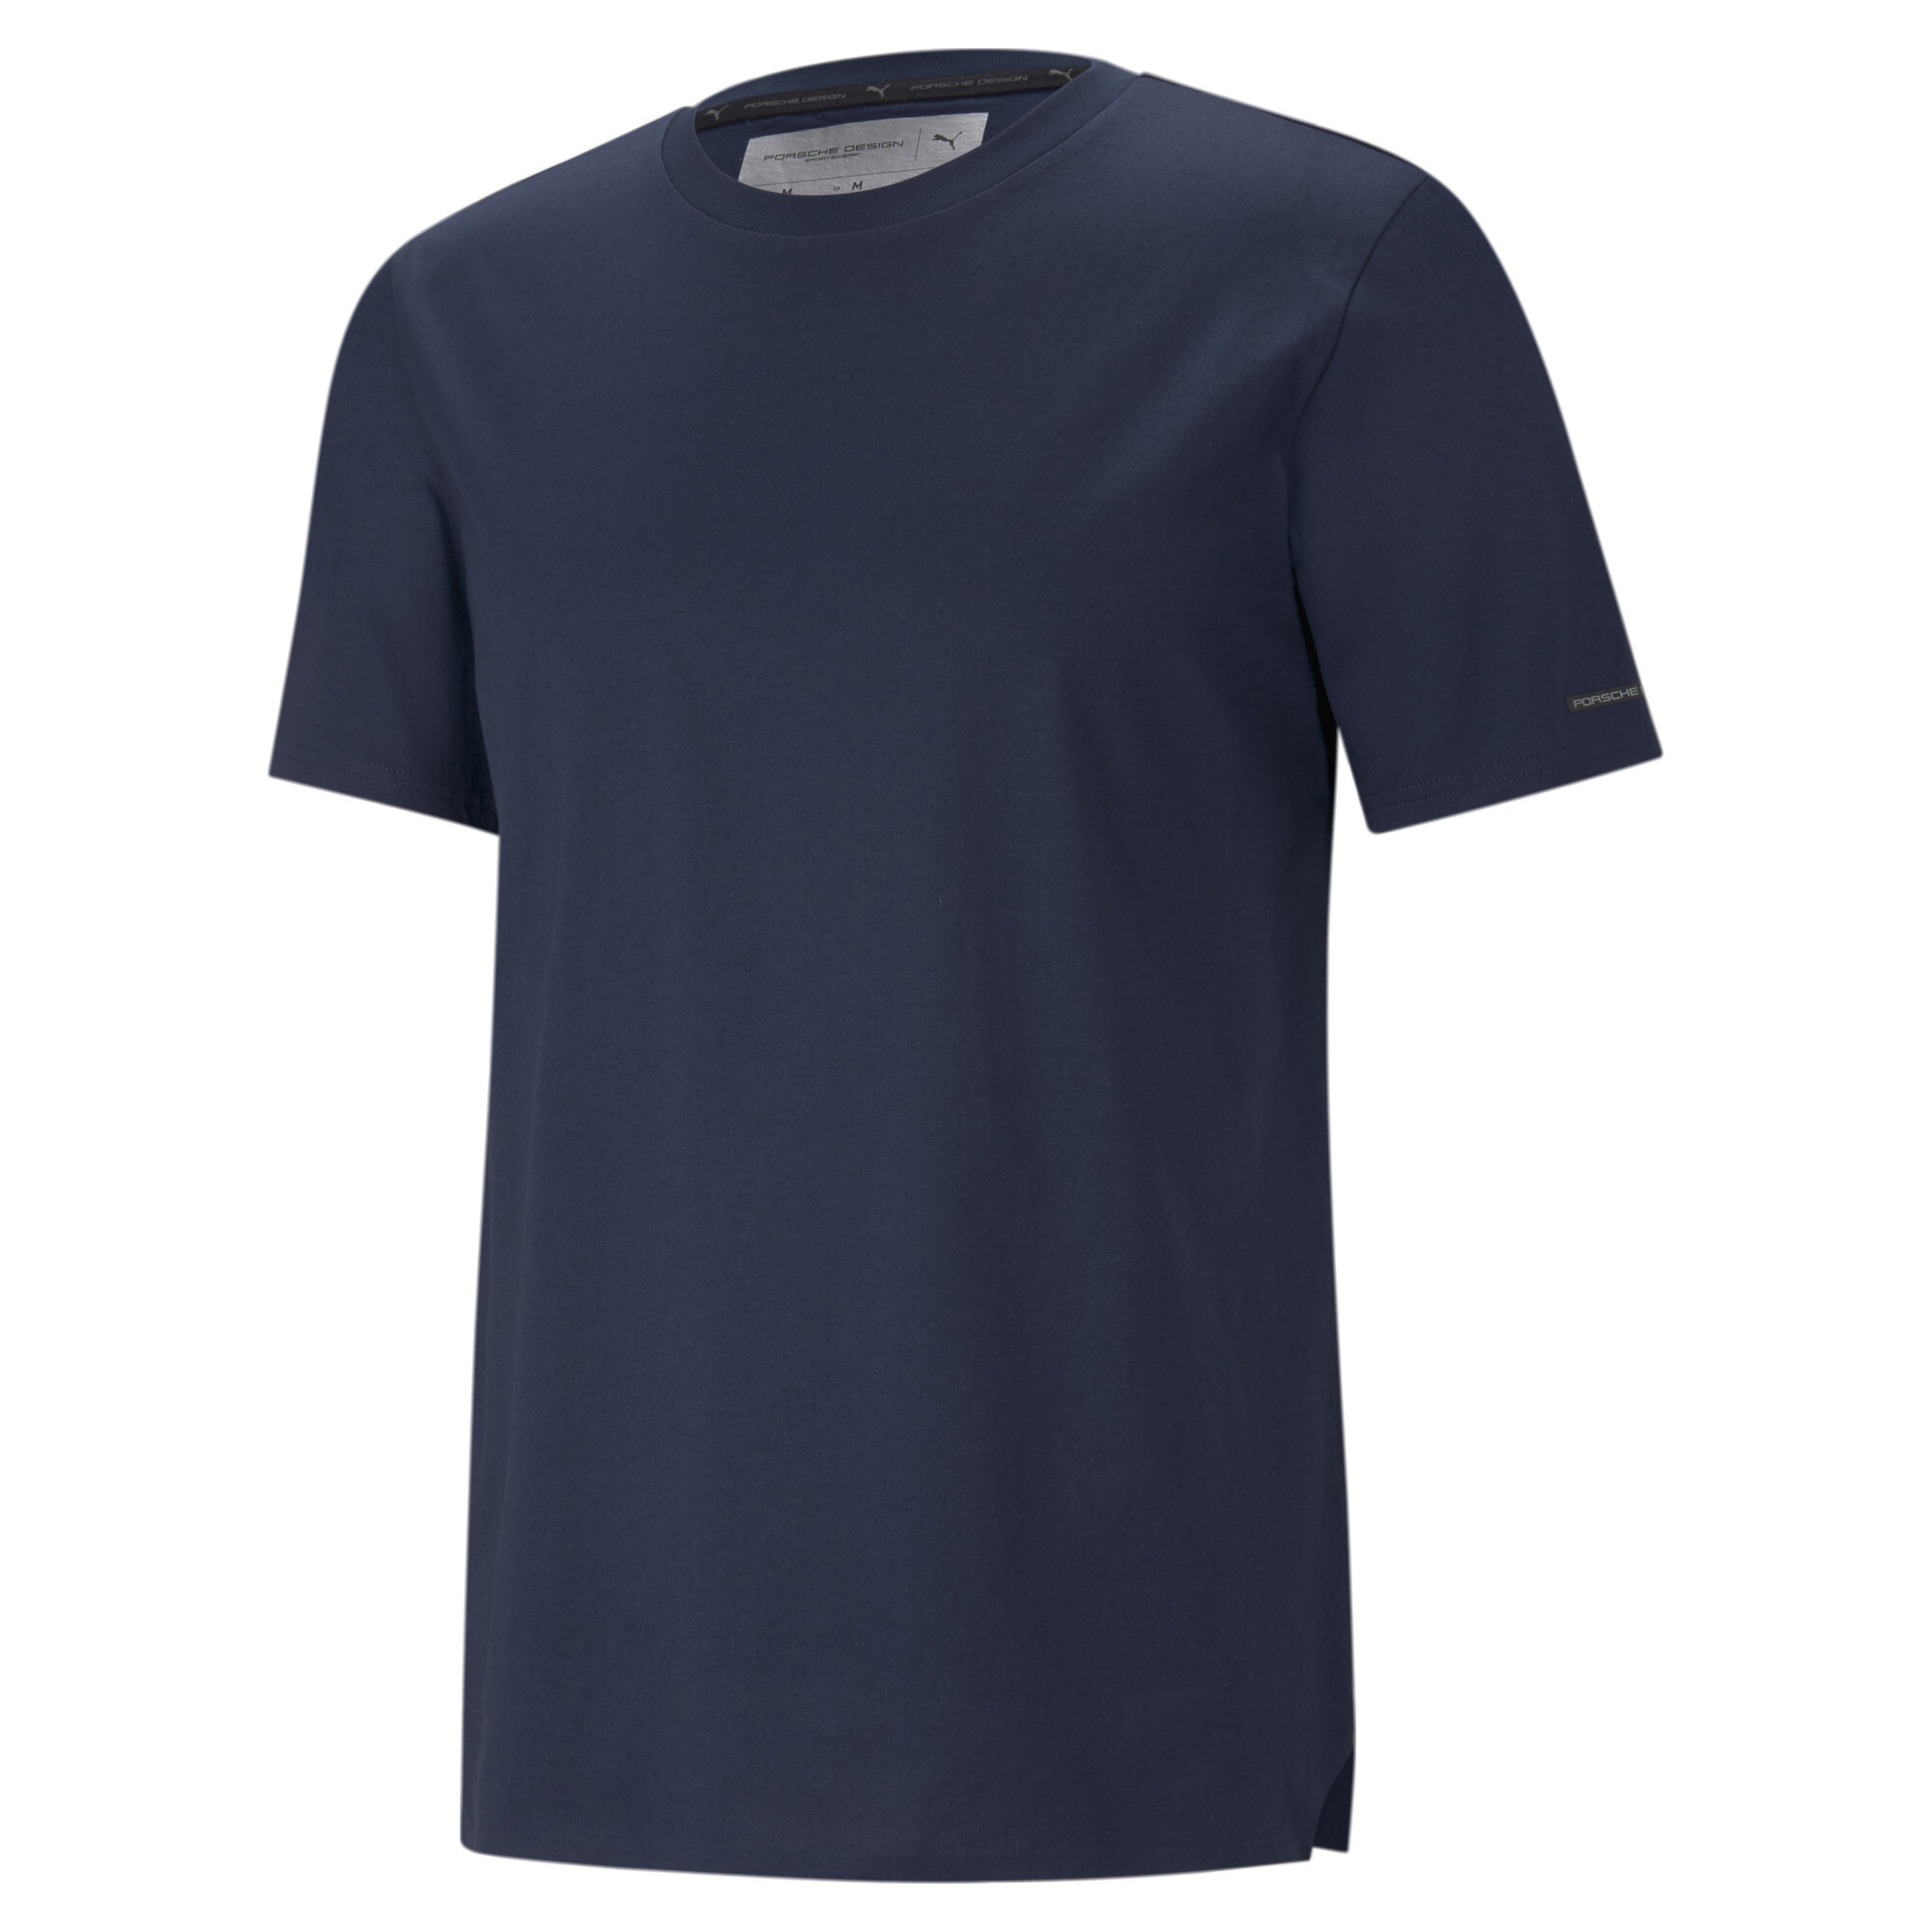 ＜プーマ公式通販＞ プーマ メンズ ポルシェ デザイン エッセンシャル 半袖 Tシャツ メンズ Navy Blazer ｜PUMA.com